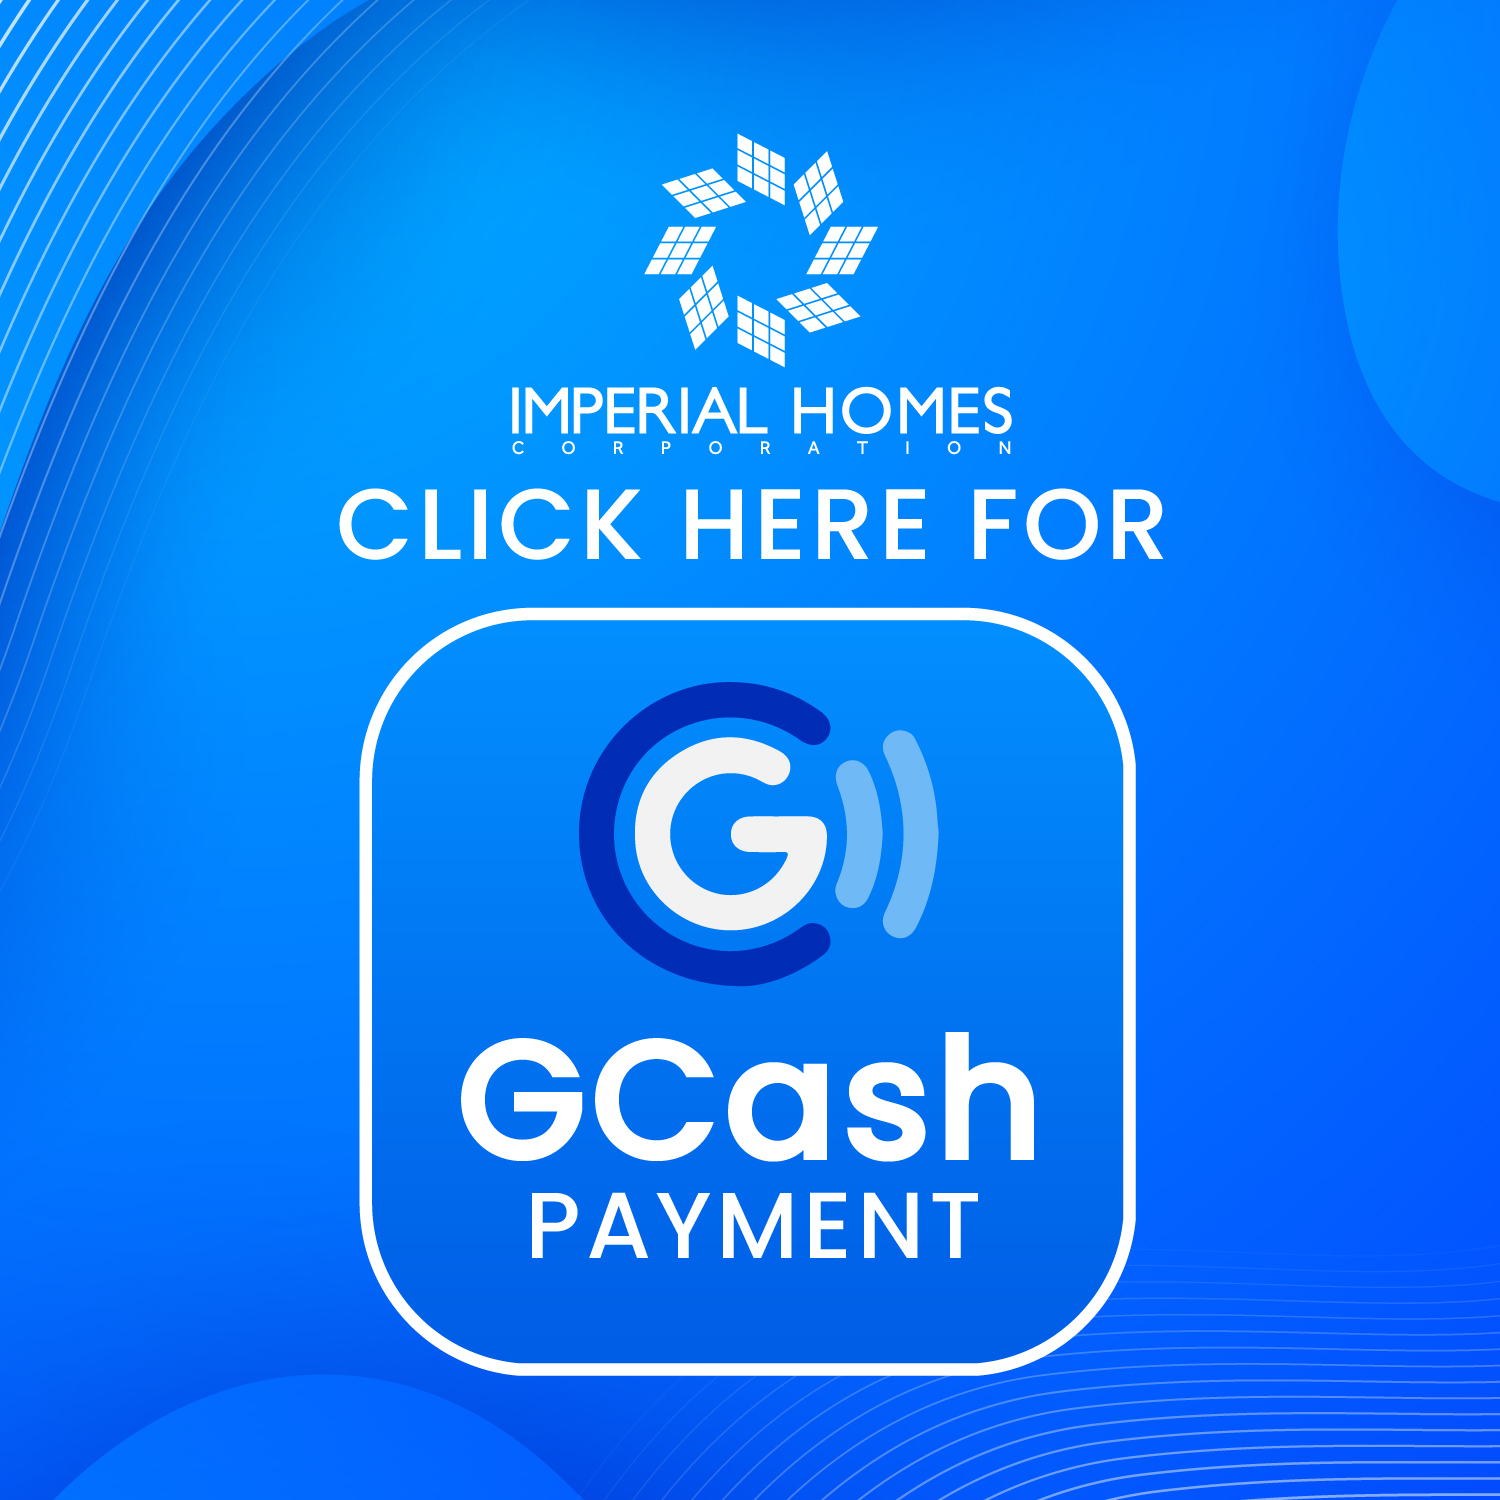 GCASH Payment